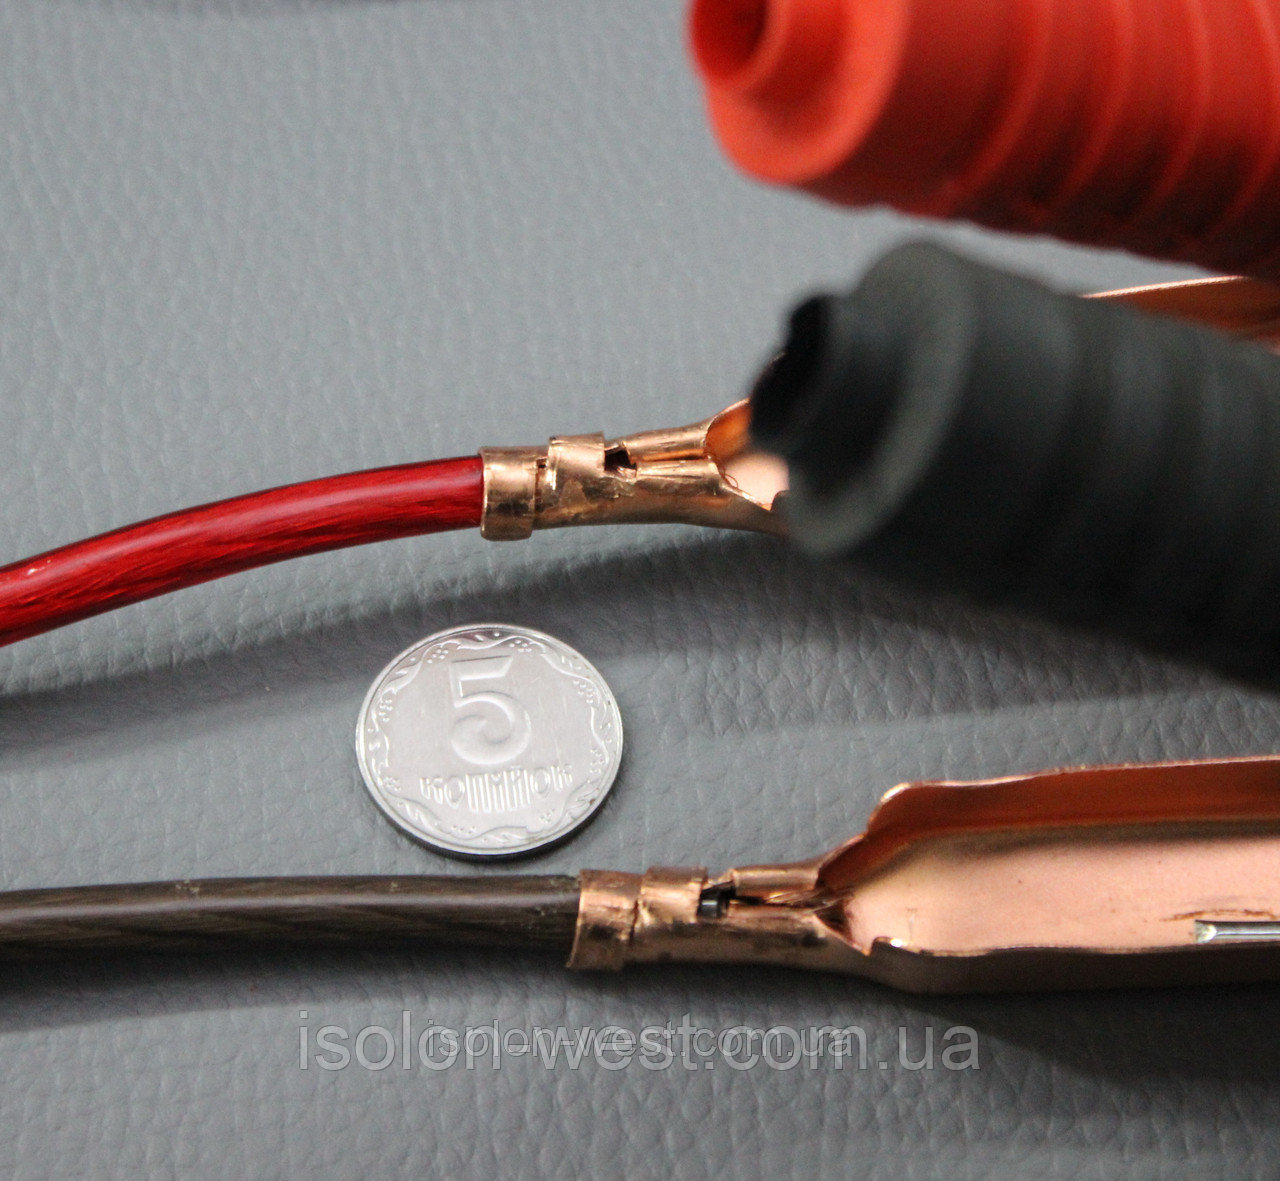 Провода для прикуривания PROFI 250 А - 2,5 м., стартовые пусковые провода для автомобиля детальная фотка